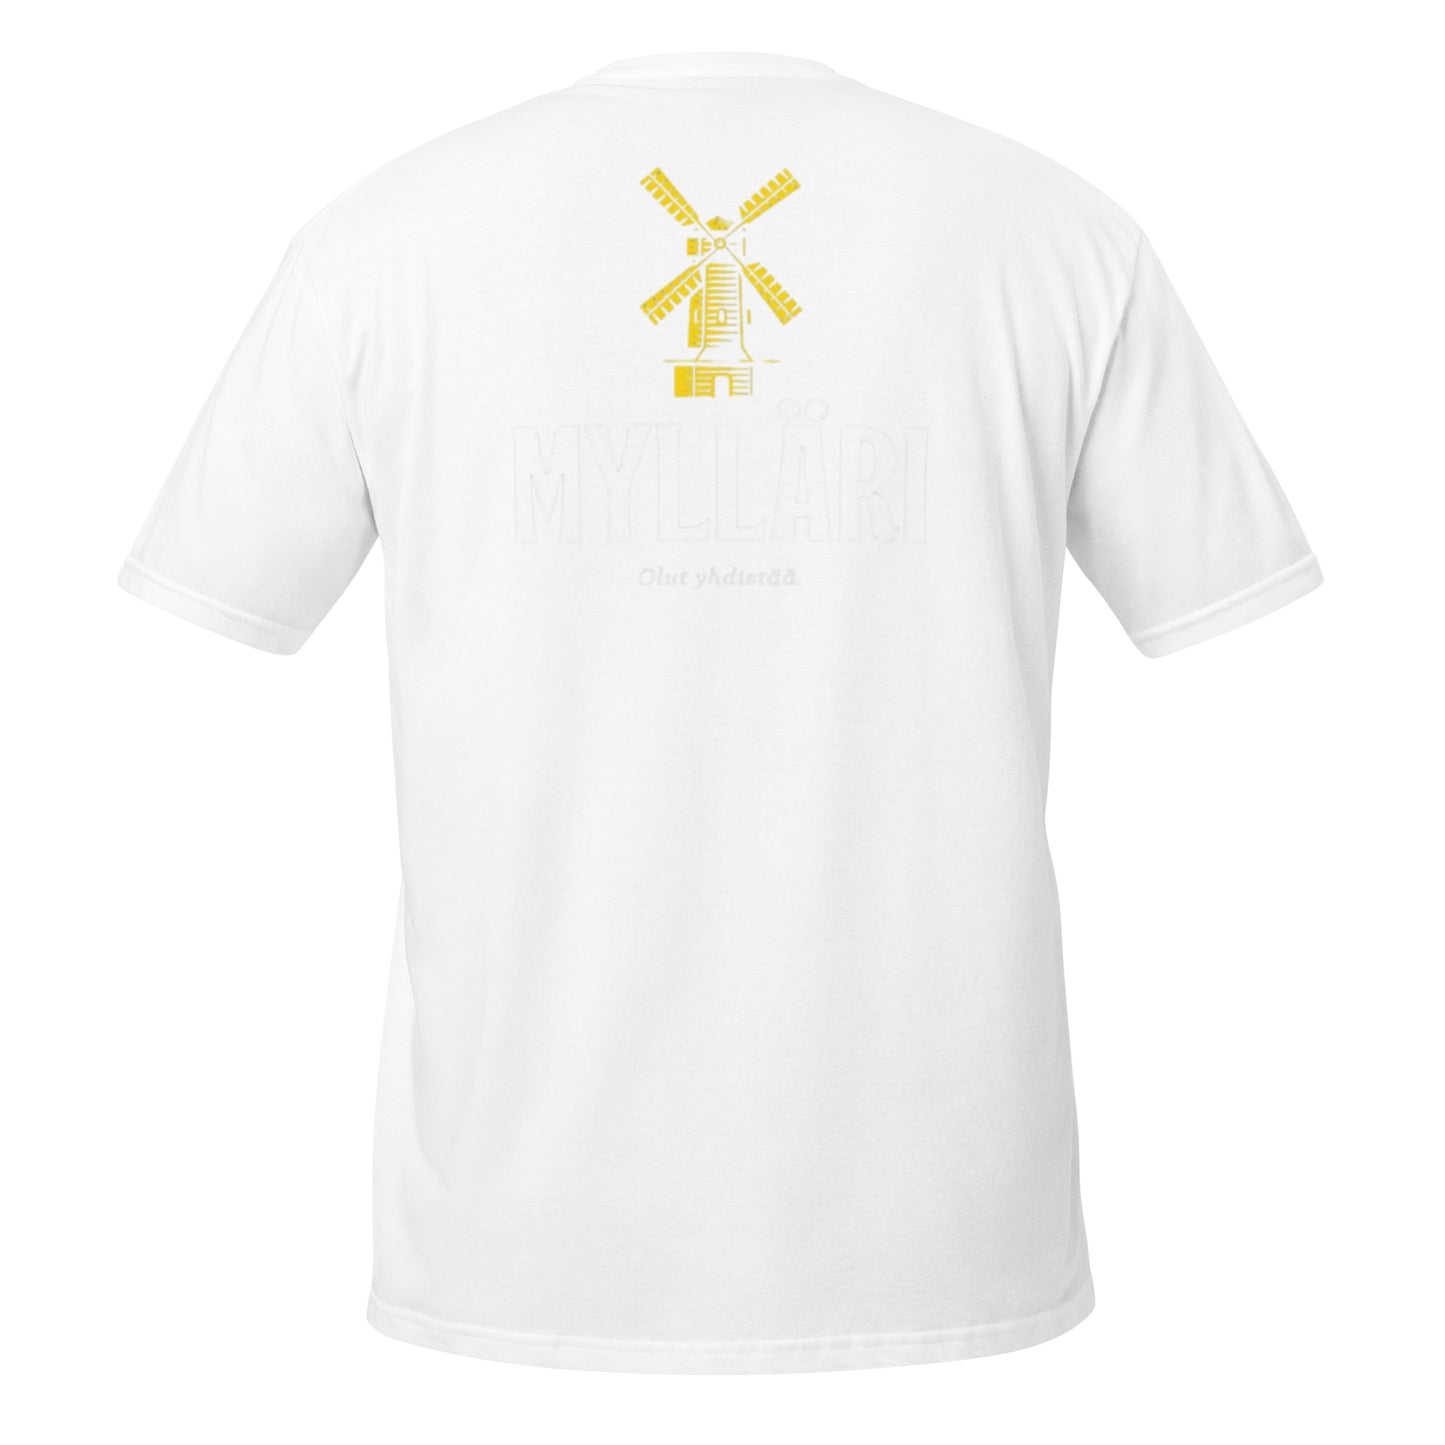 "Mylläri" unisex t-paita (etu- ja selkäprintti)